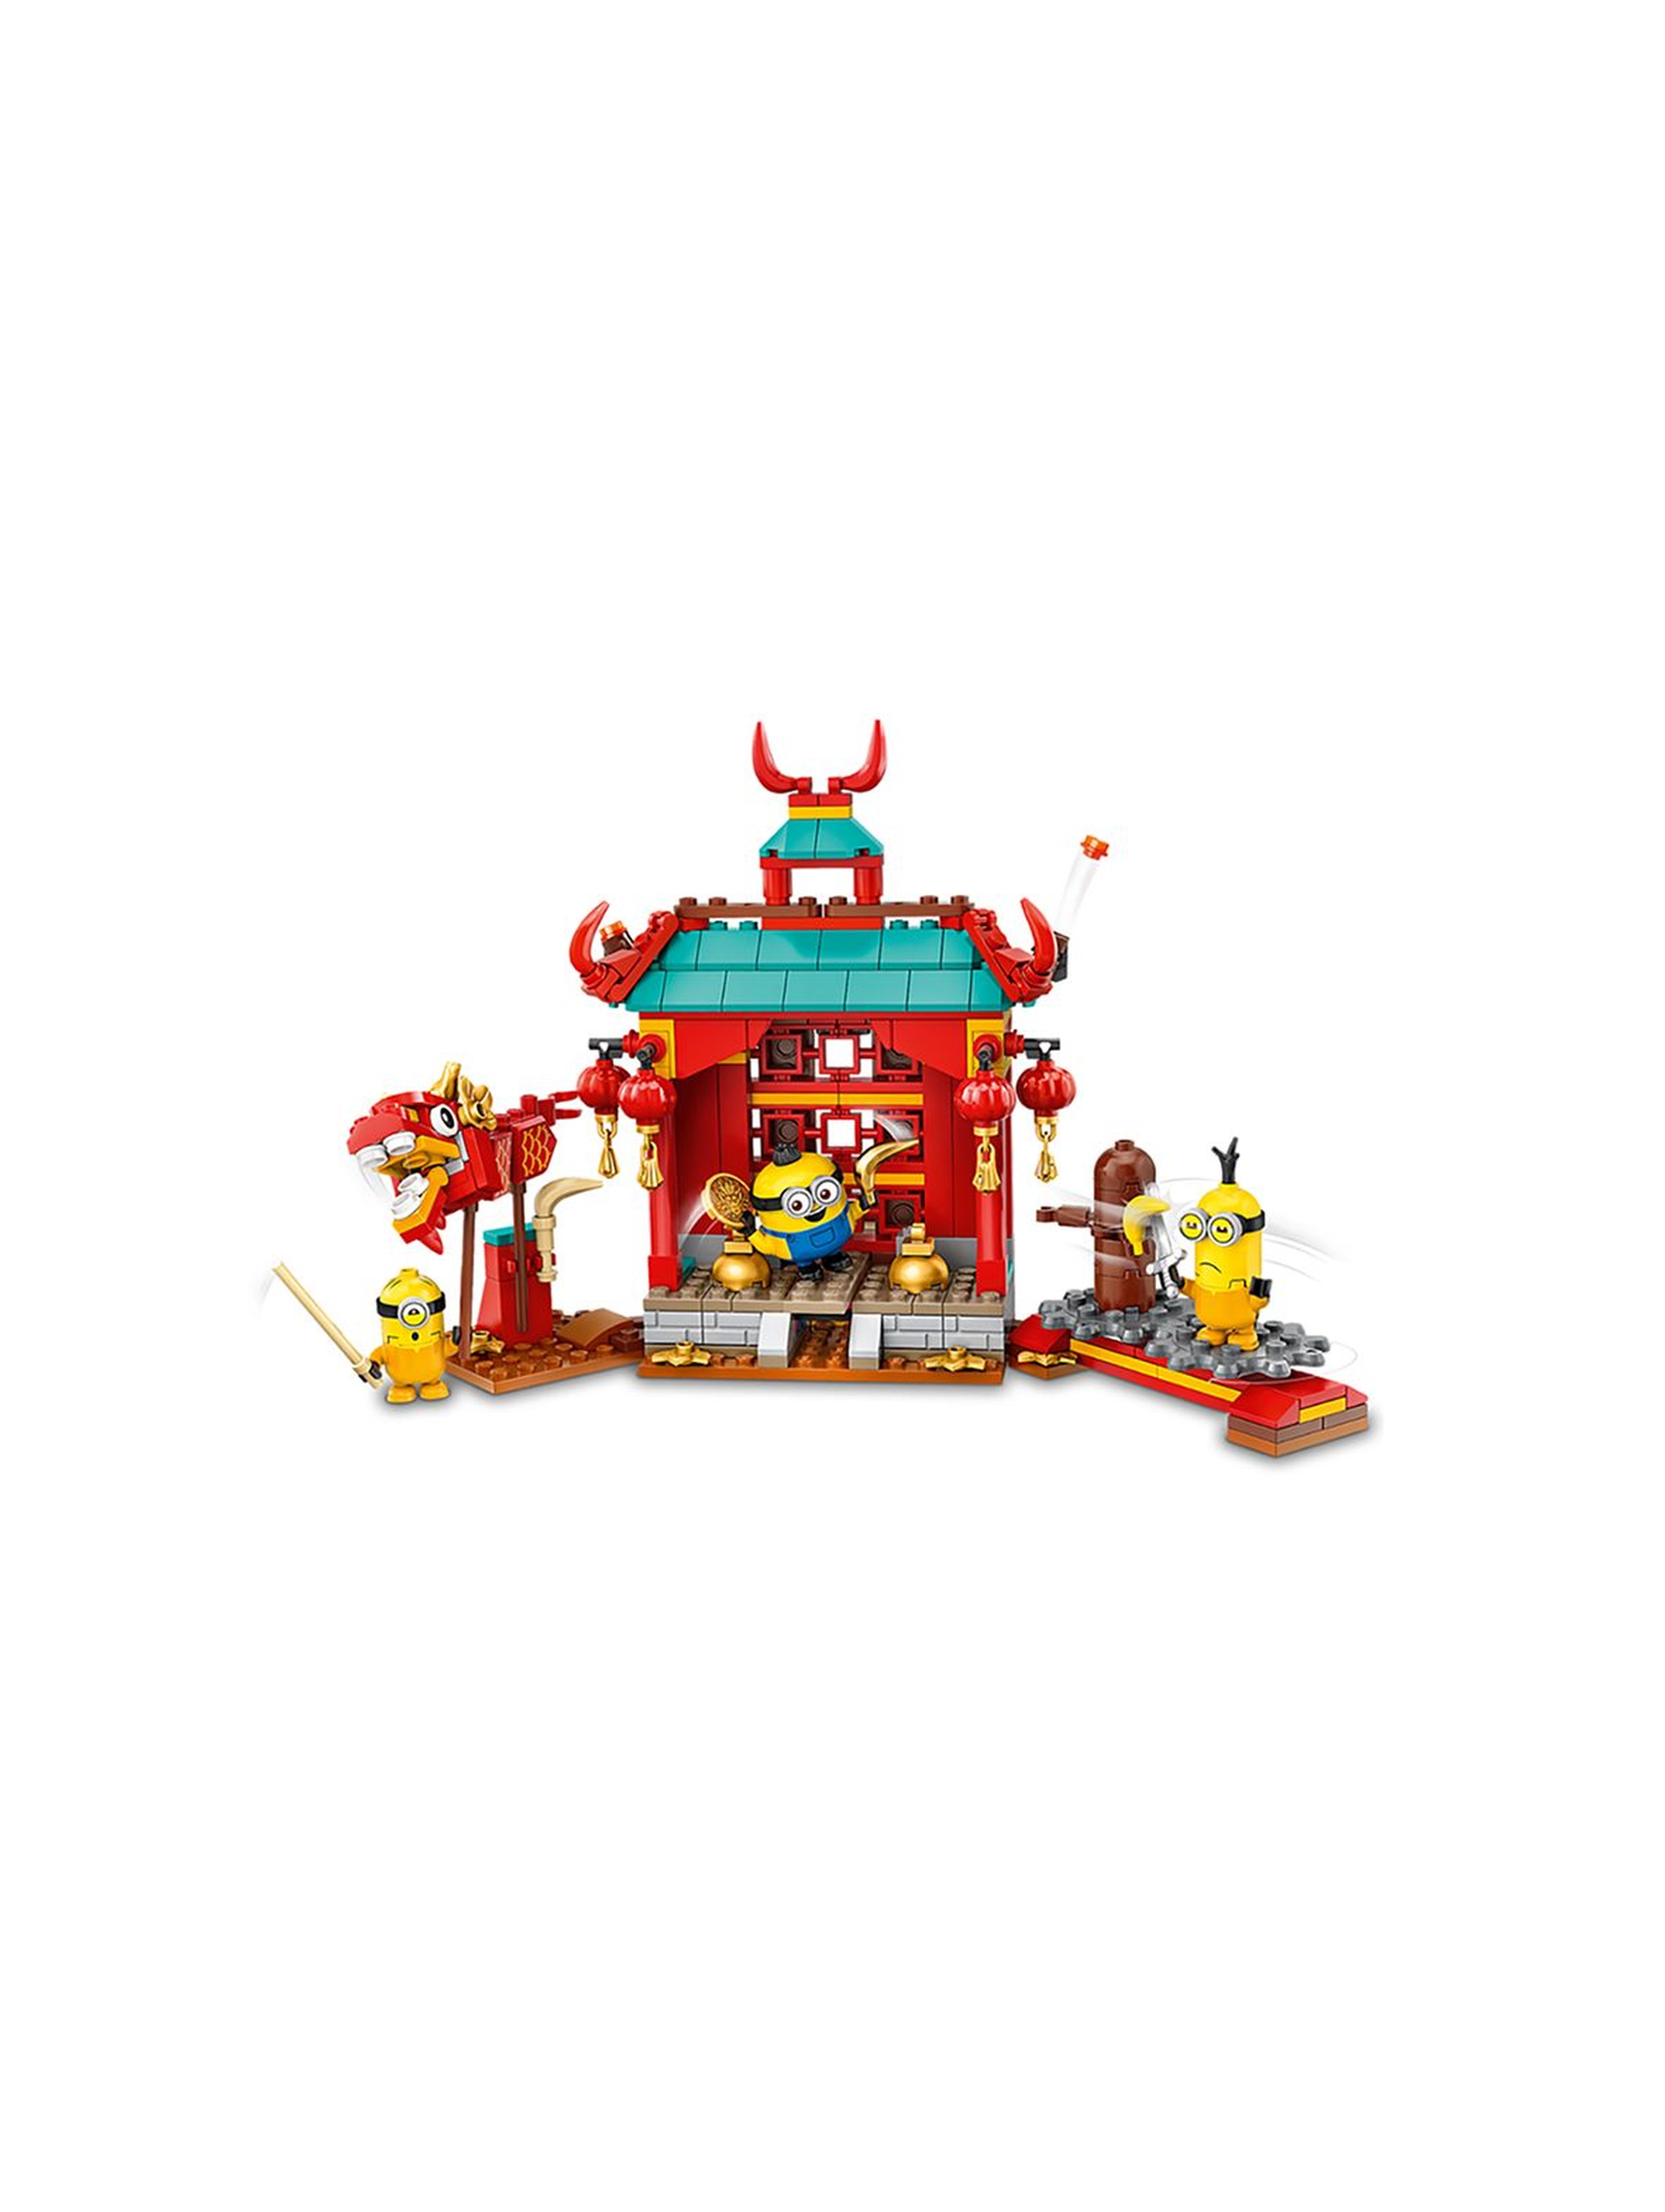 LEGO® Minions 75550 Minionki i walka kung-fu wiek 6+